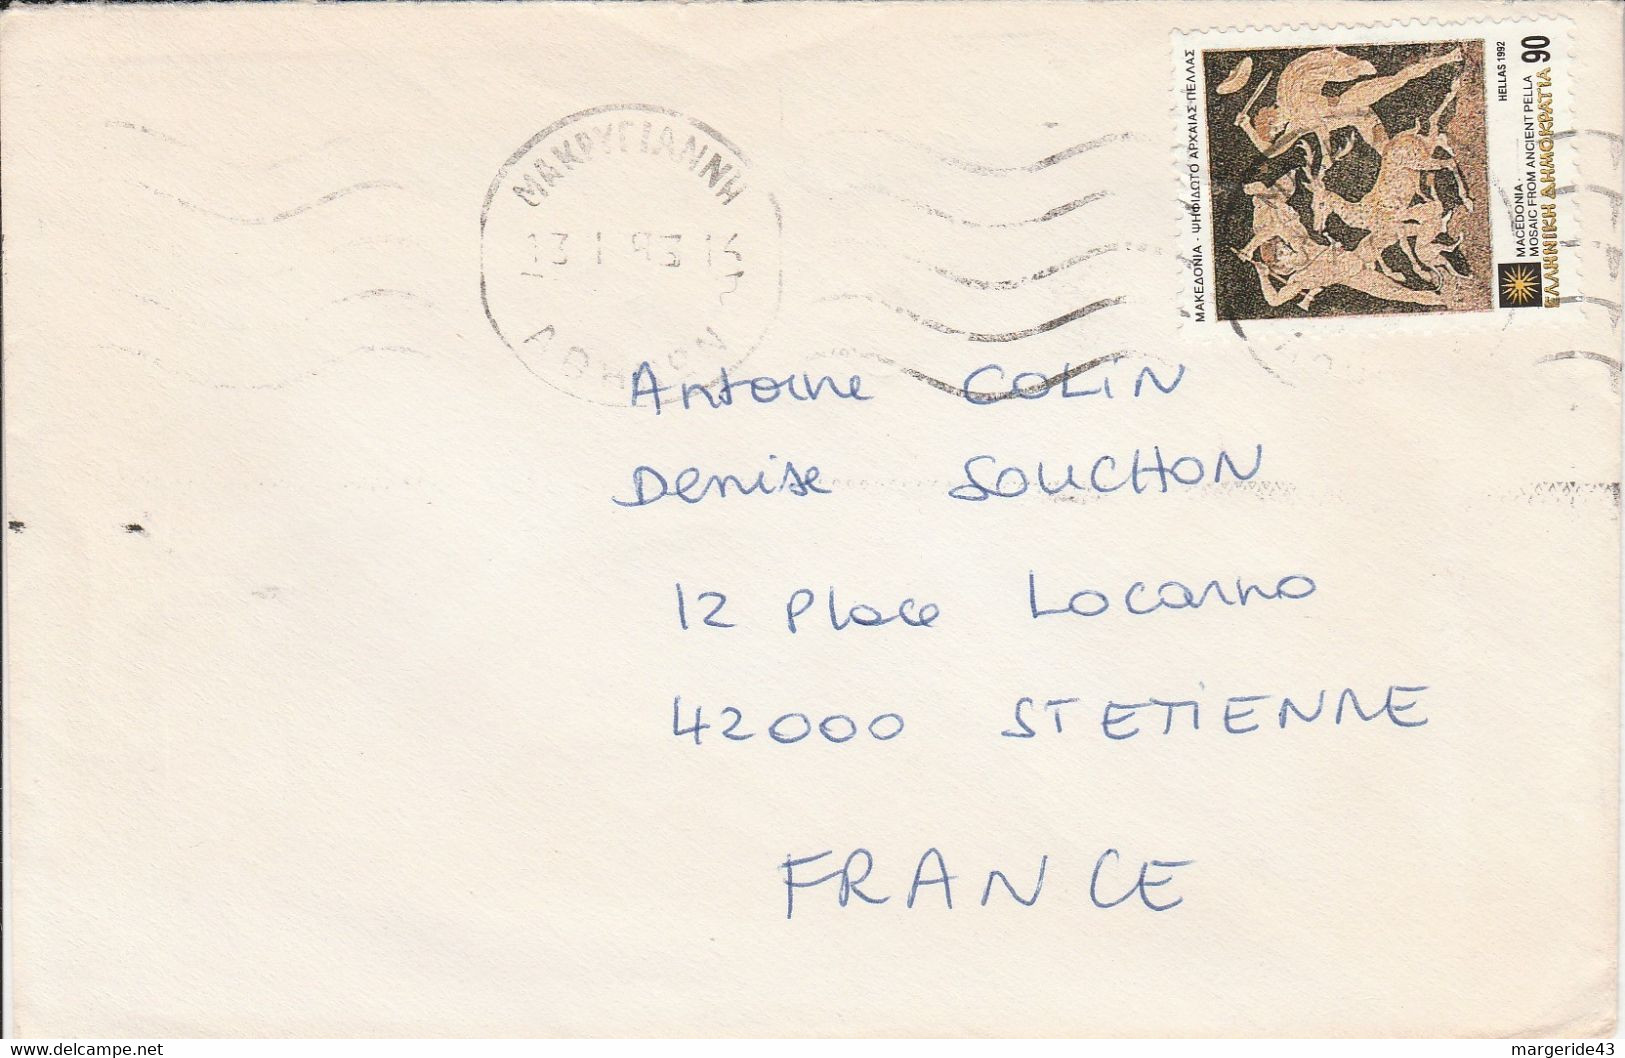 GRECE SEUL SUR LETTRE POUR LA FRANCE 1993 - Lettres & Documents